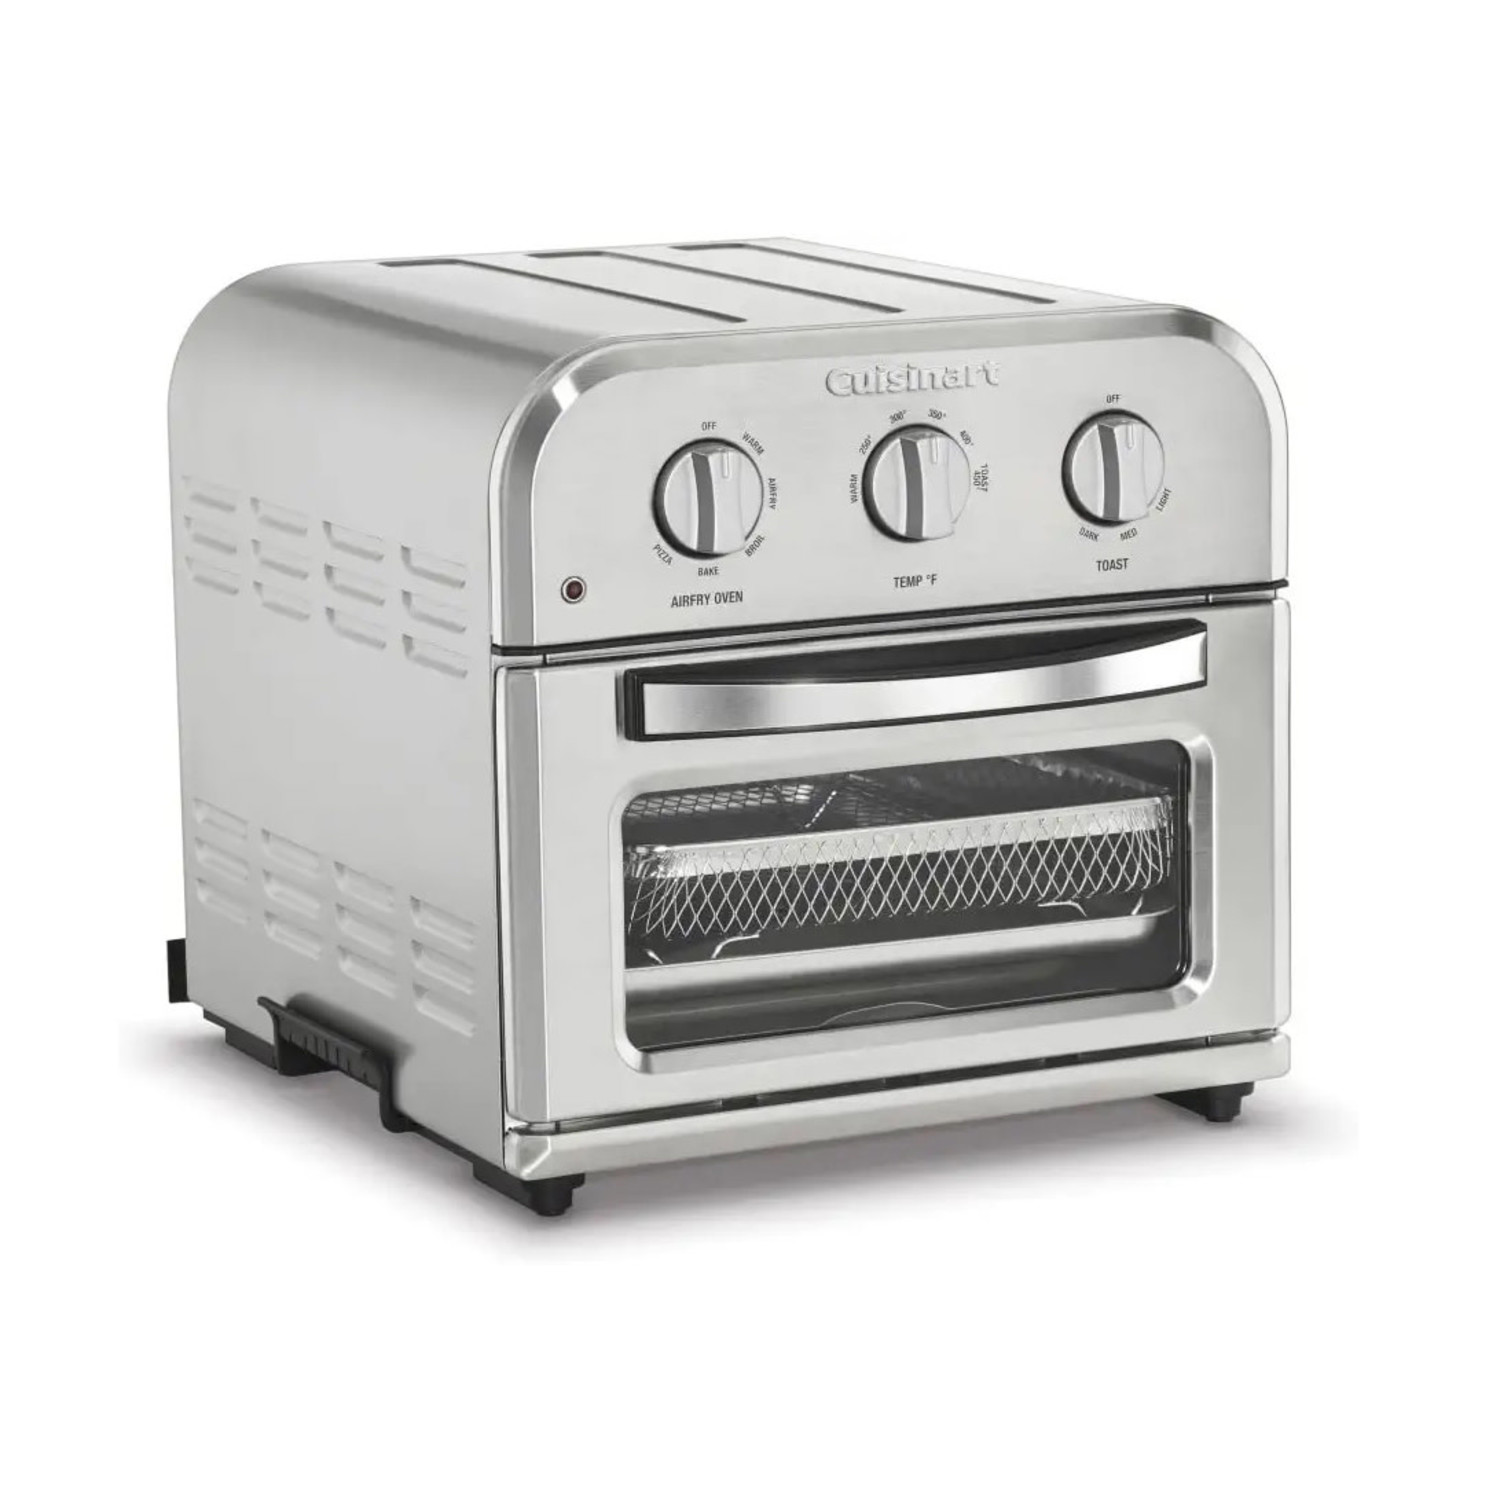 https://cdn.shoplightspeed.com/shops/633447/files/48123753/1500x4000x3/cuisinart-compact-air-fryer-toaster-oven.jpg